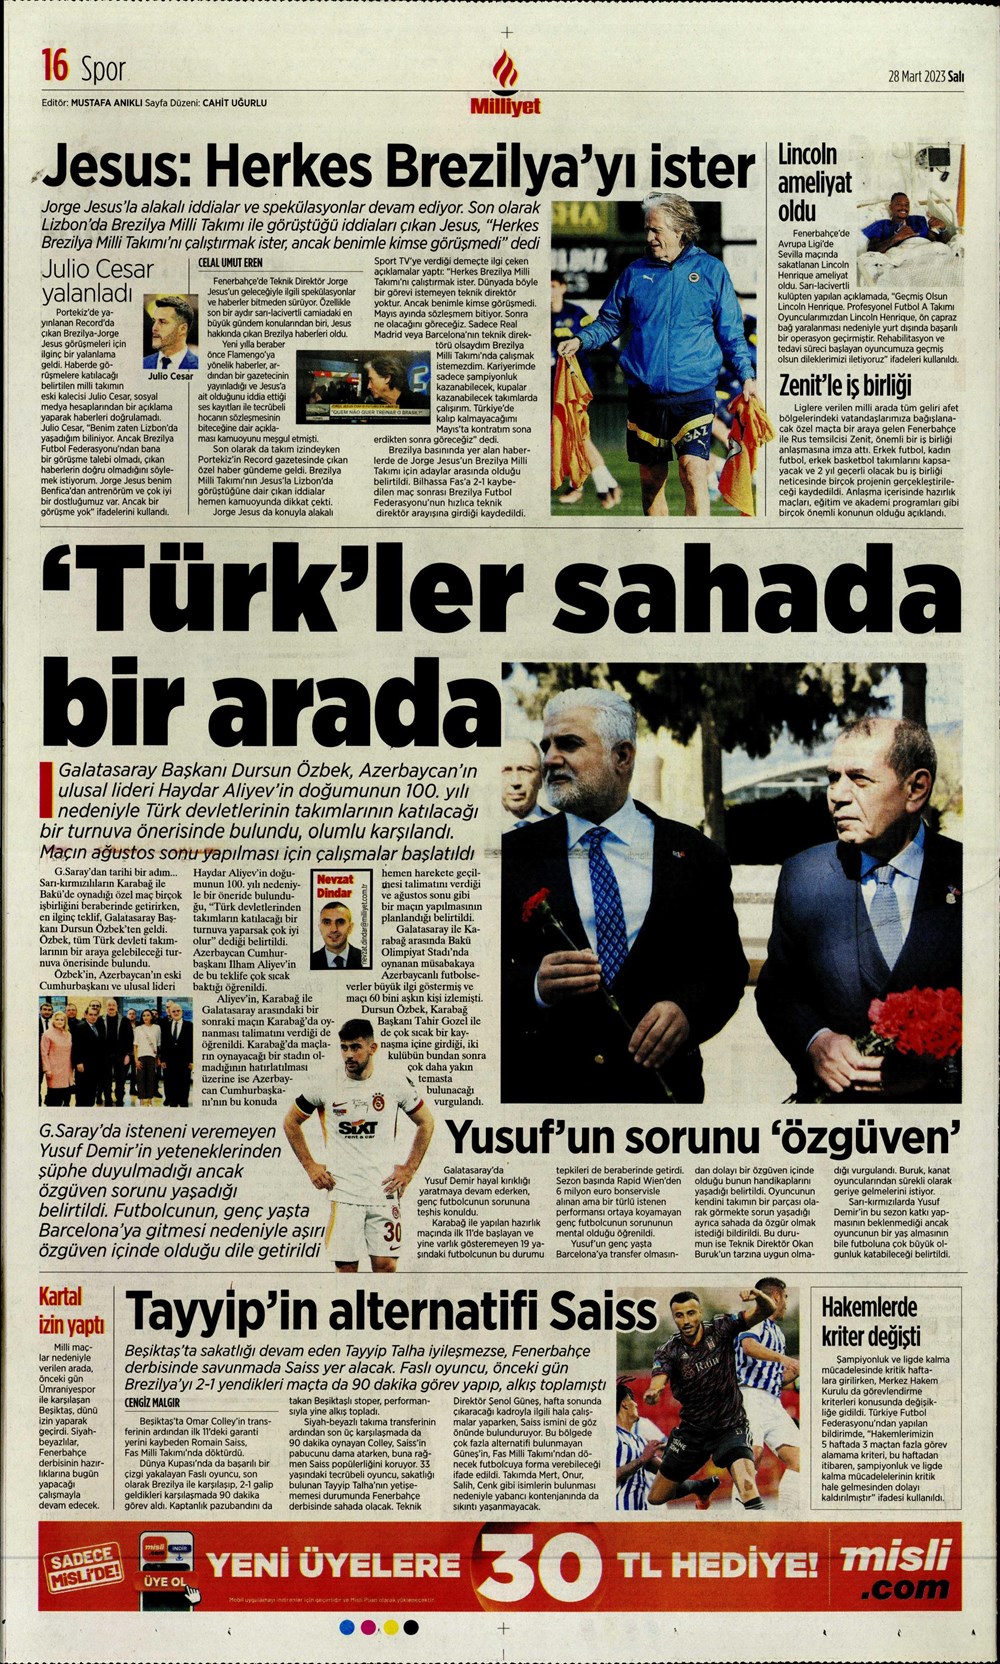 "Vurduğumuz gol olsun" - Sporun manşetleri - 22. Foto